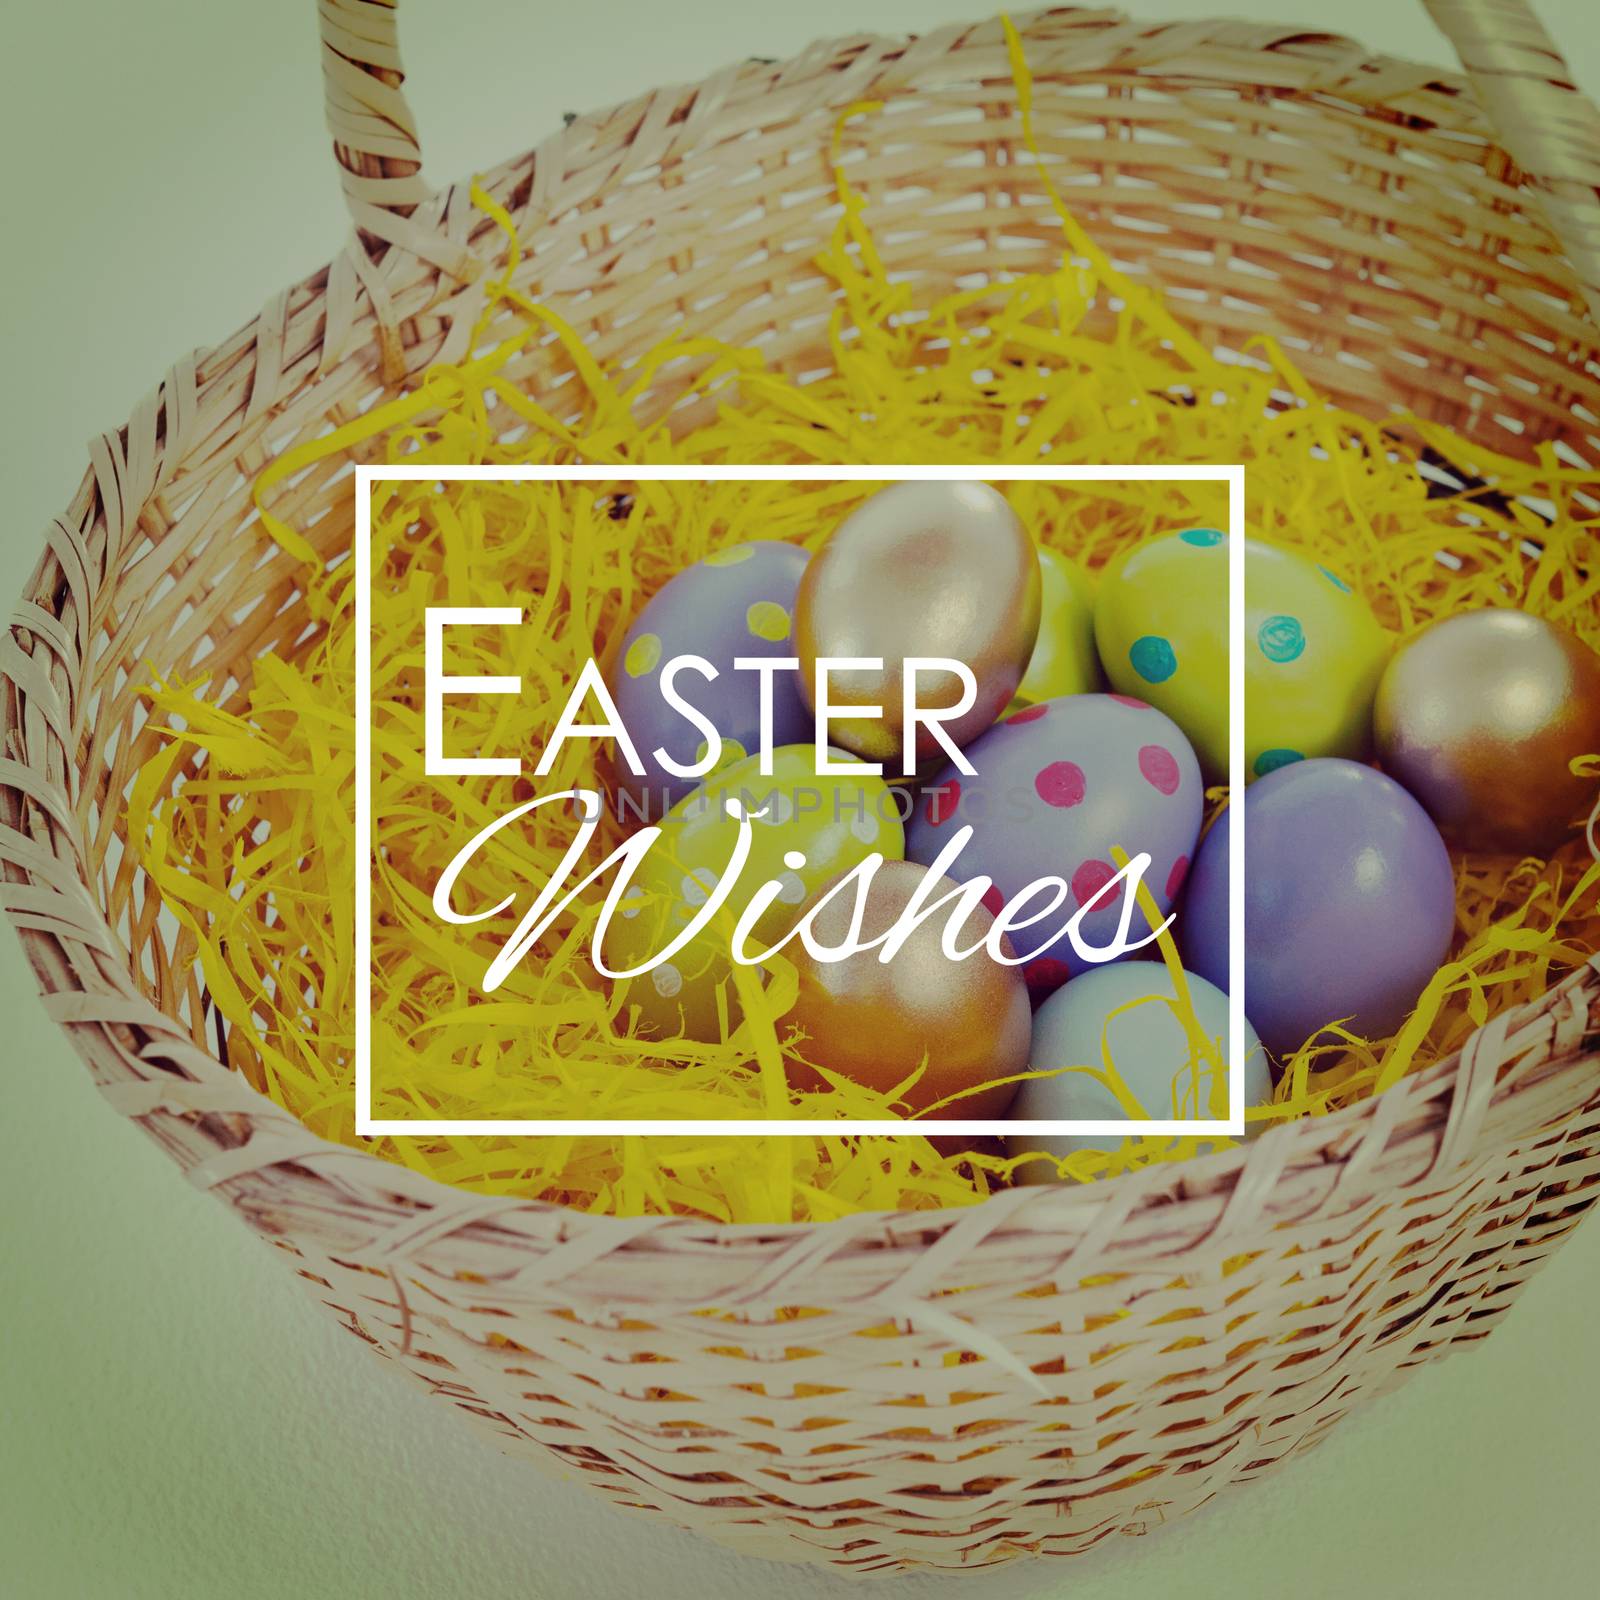 Easter greeting against various easter eggs in wicker basket